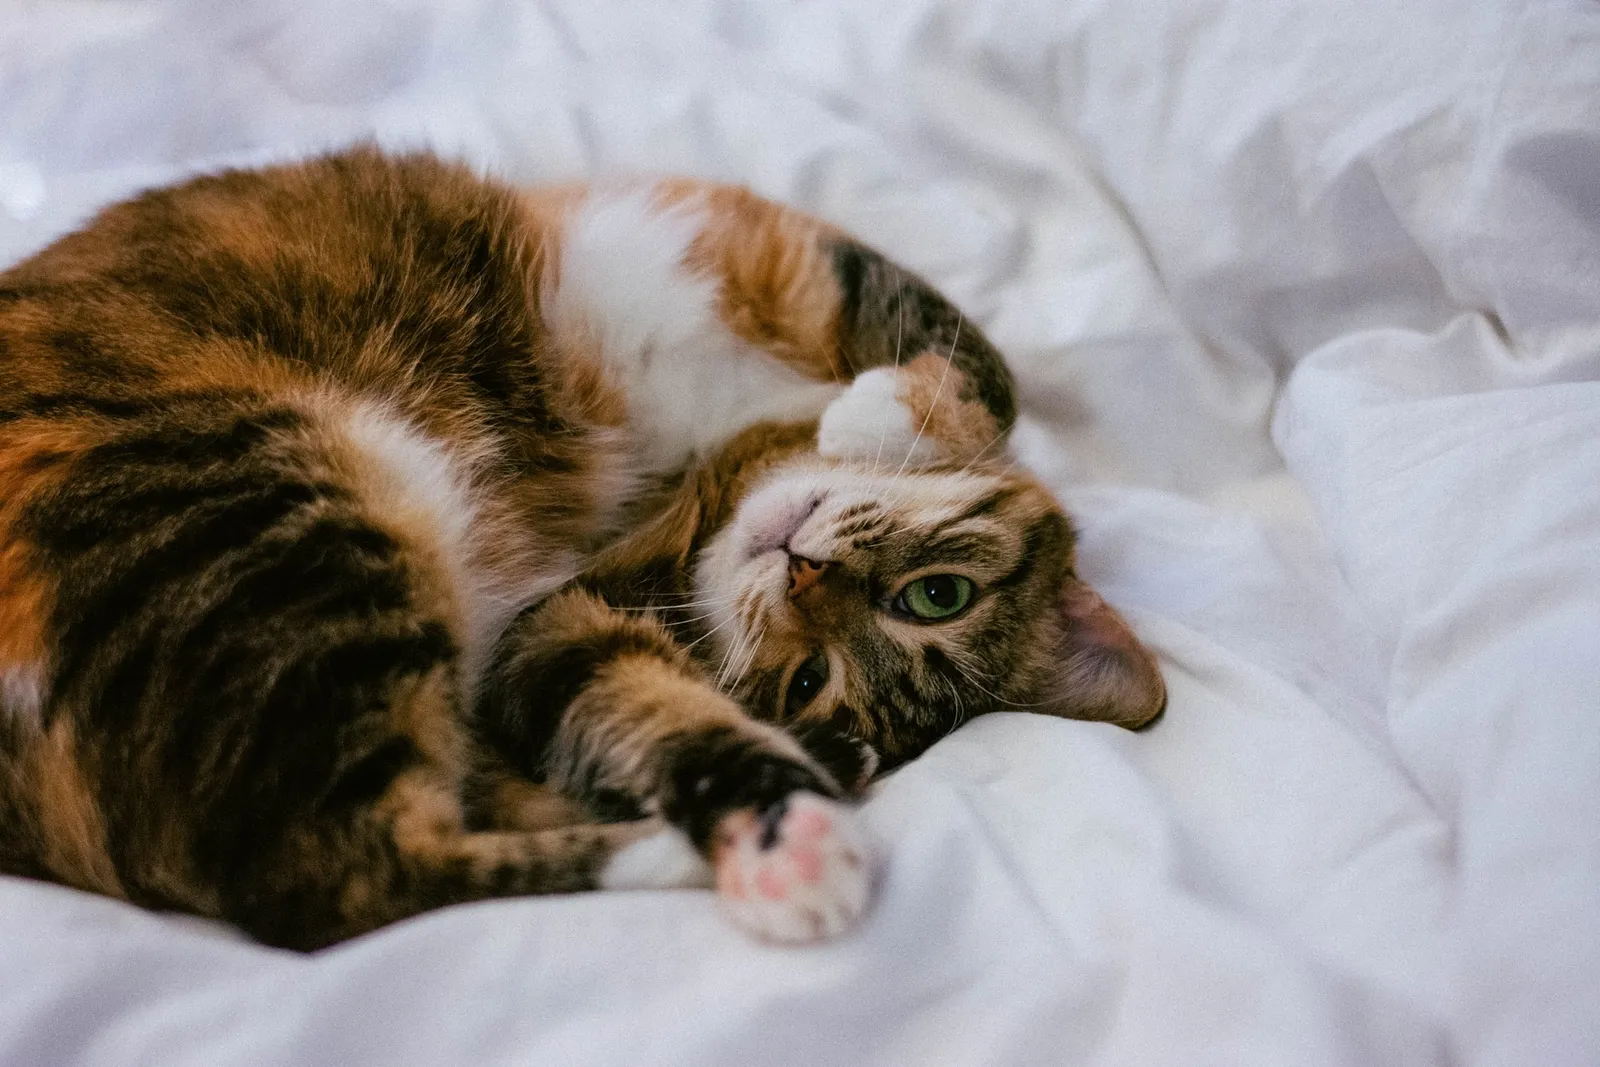 7 Cara Menggemukkan Kucing Peliharaanmu, Tanpa Membuatnya Obesitas